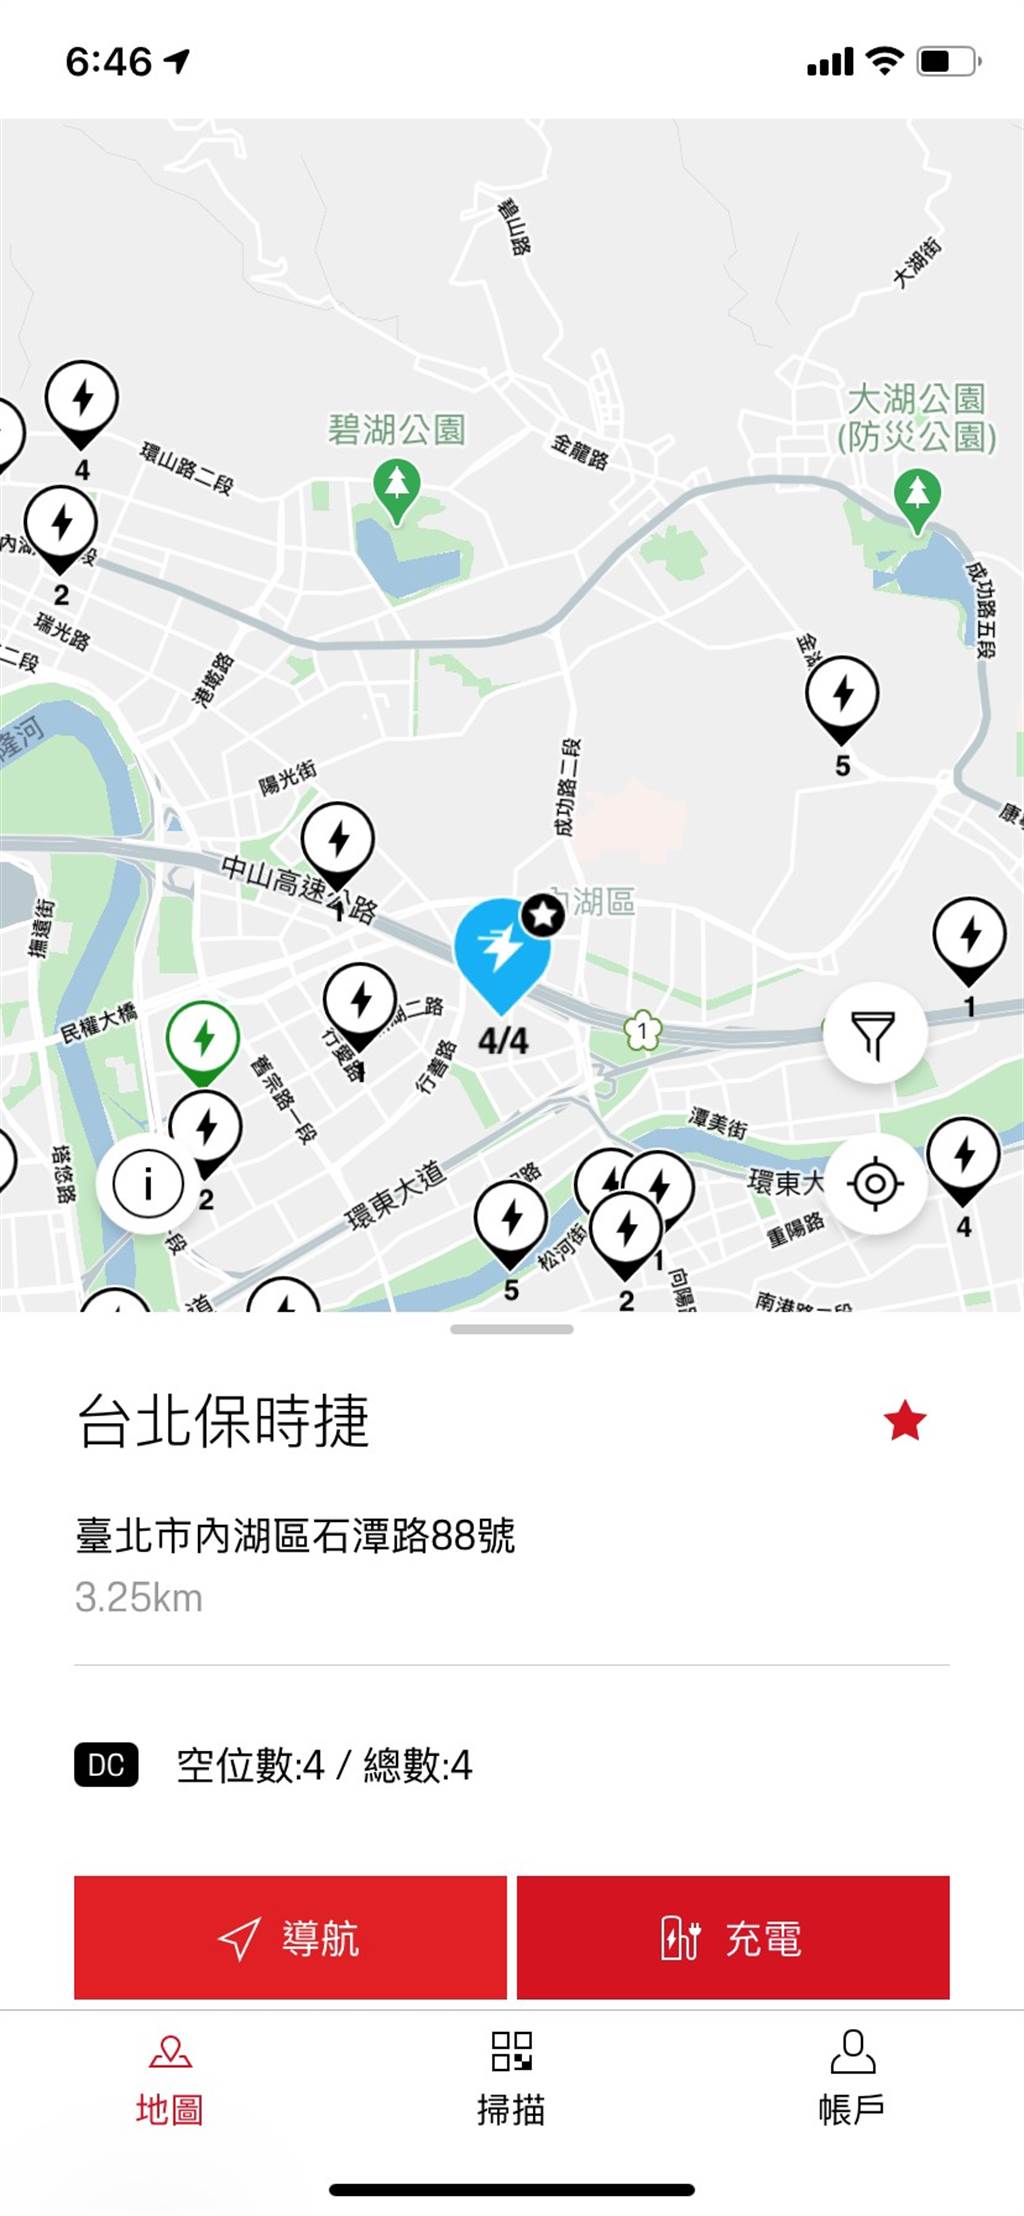 為 Taycan 設計，台灣保時捷推出專屬充電服務App
